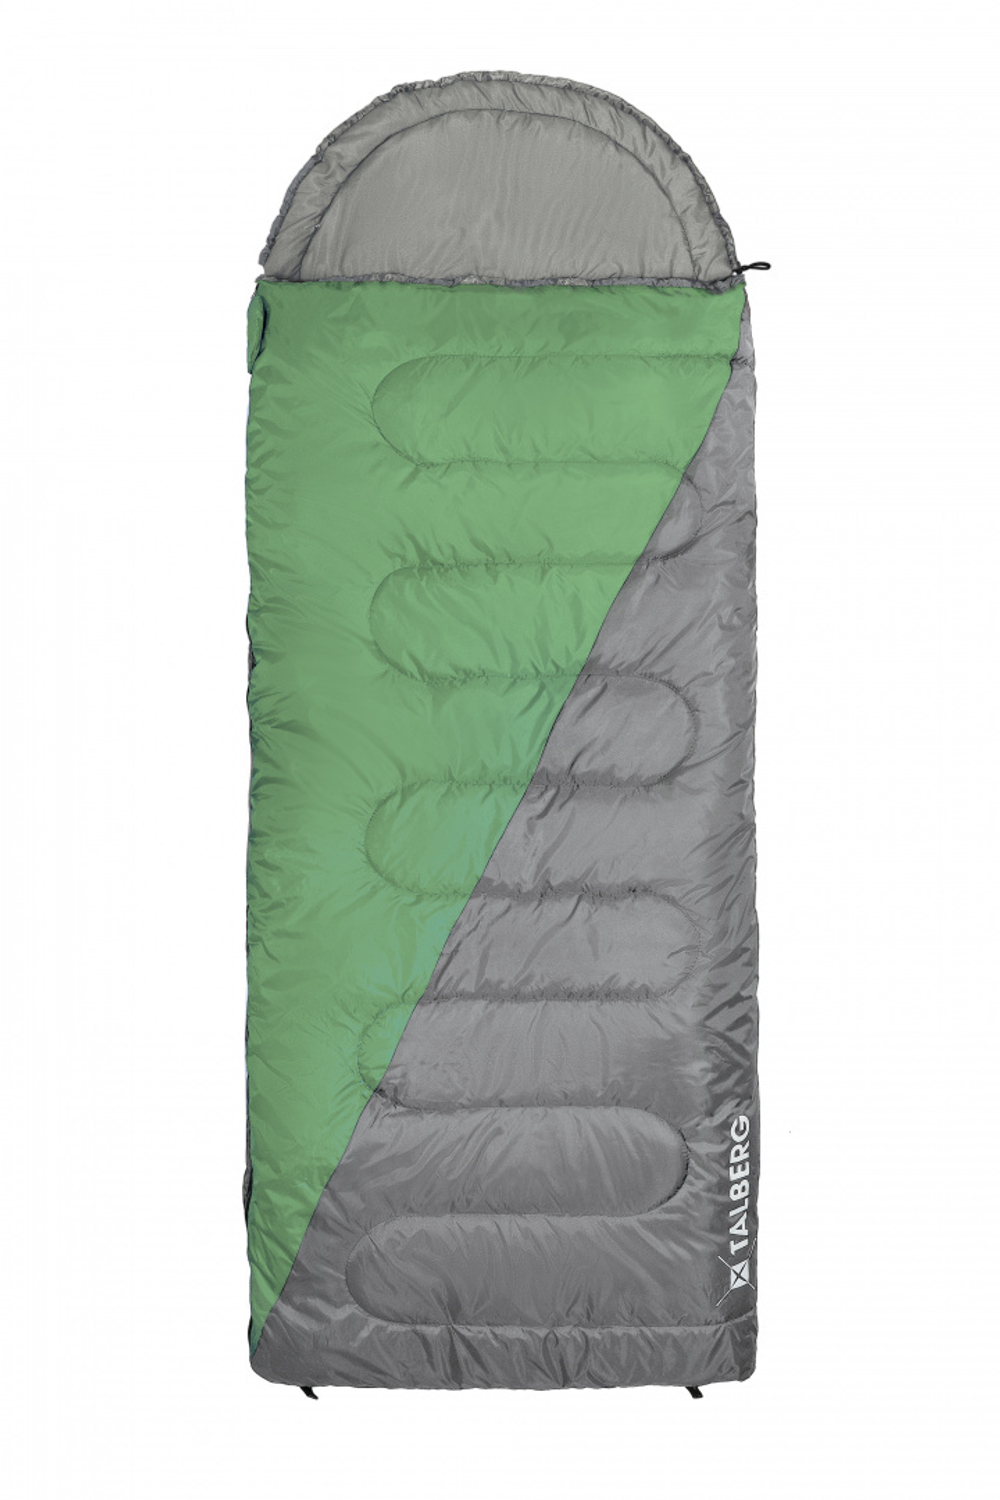 SUMMER 0°C спальный мешок (0С, зелёный правый)